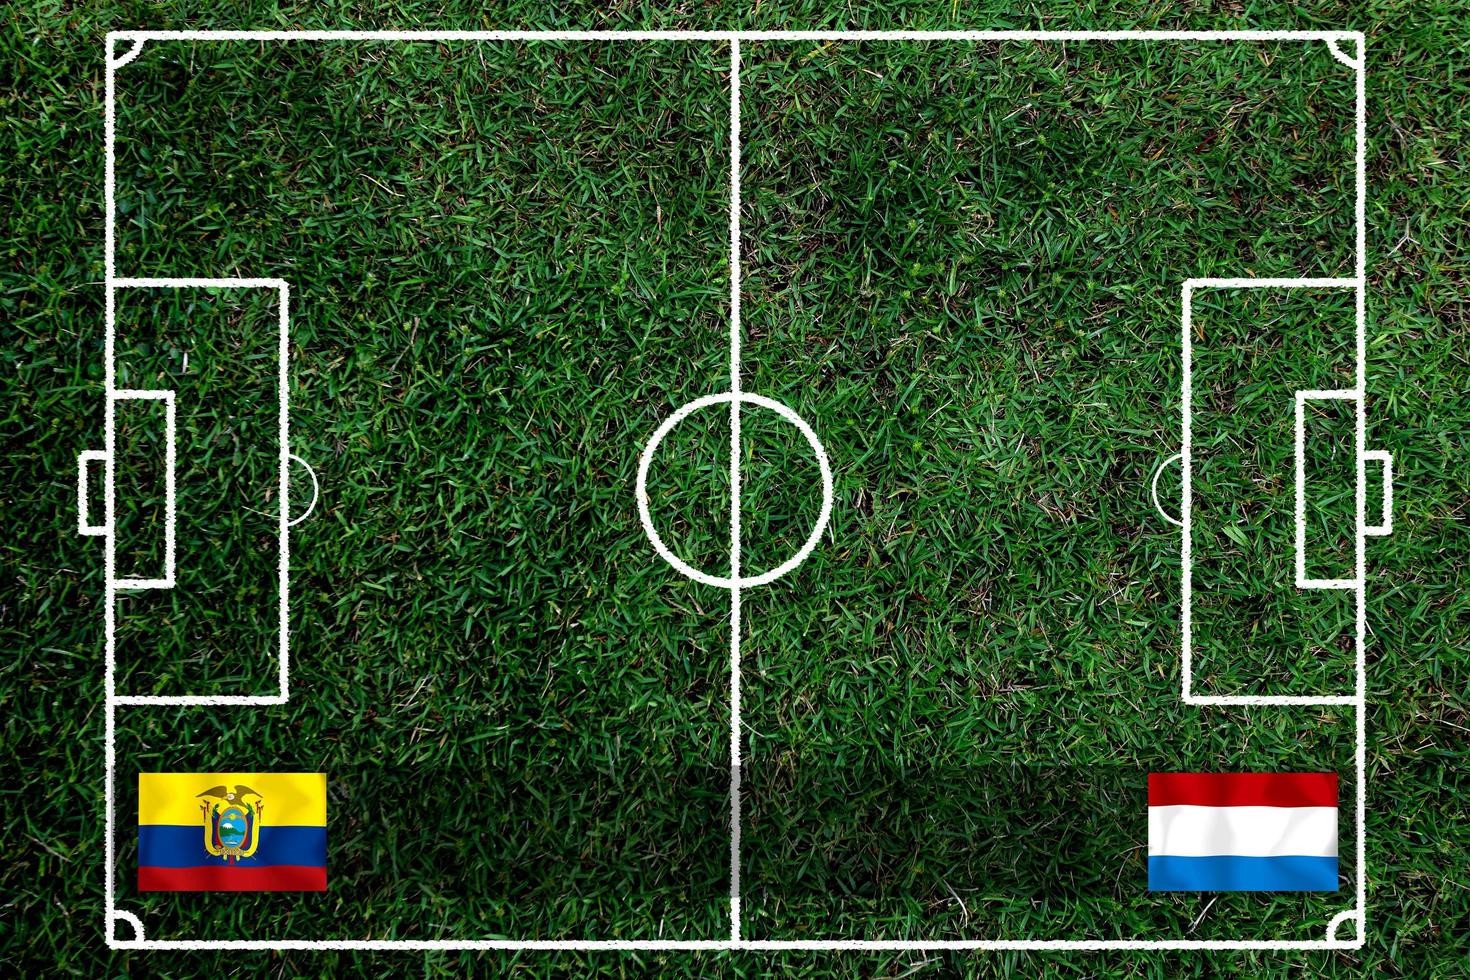 compétition de coupe de football entre l'équateur national et les pays-bas nationaux. photo